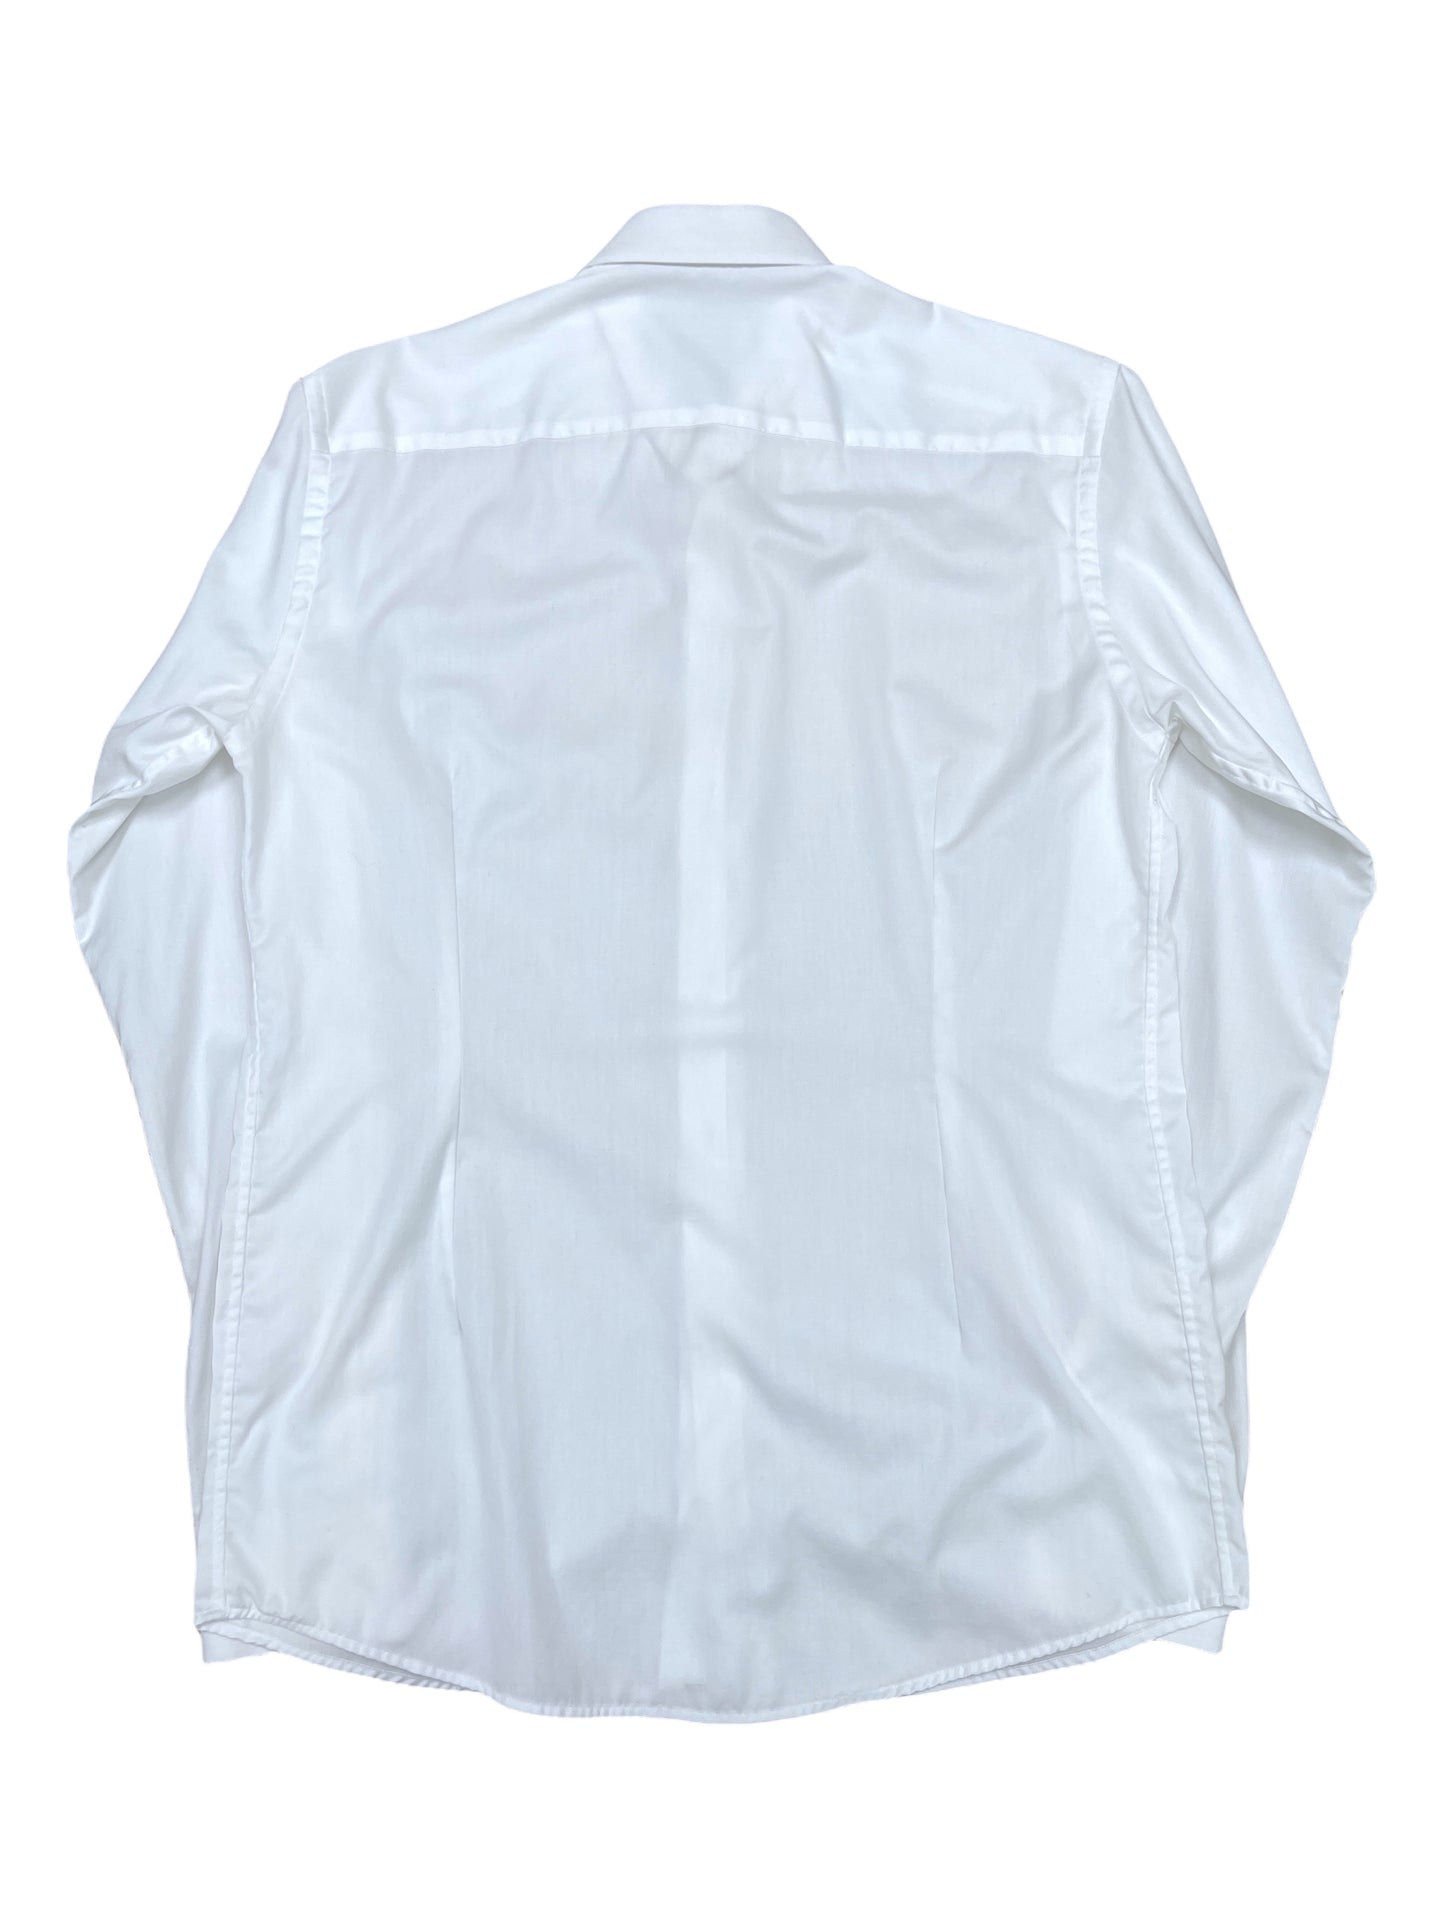 Eton White Dress Shirt 16.5 - Large